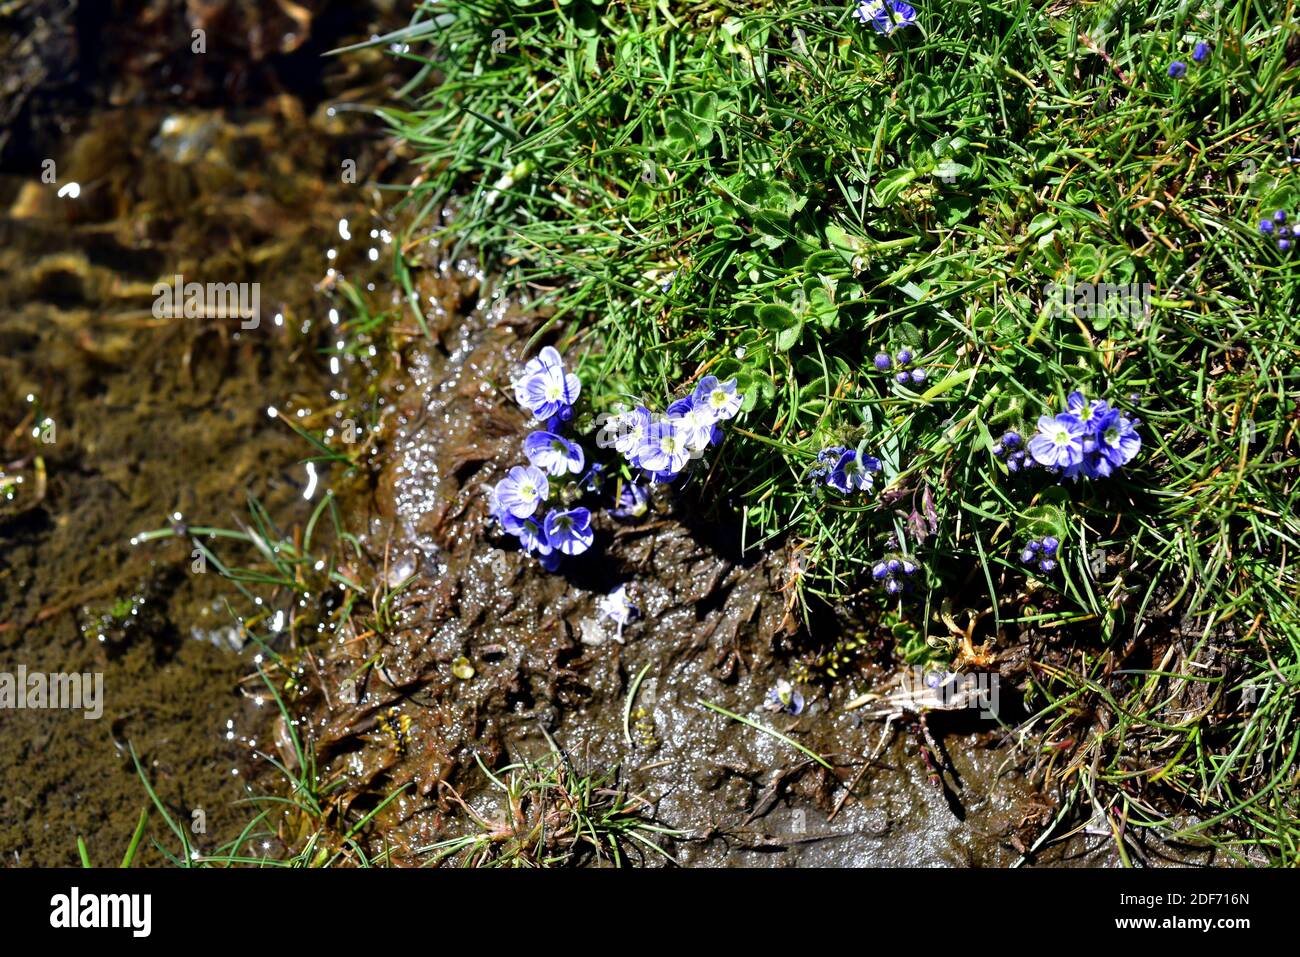 Veronica turbicola oder Veronica nevadensis ist eine mehrjährige Pflanze, die in der Sierra Nevada und der Sierra de Los Filabres endemisch ist. Wächst auf feuchten Wiesen (borreguiles) Stockfoto